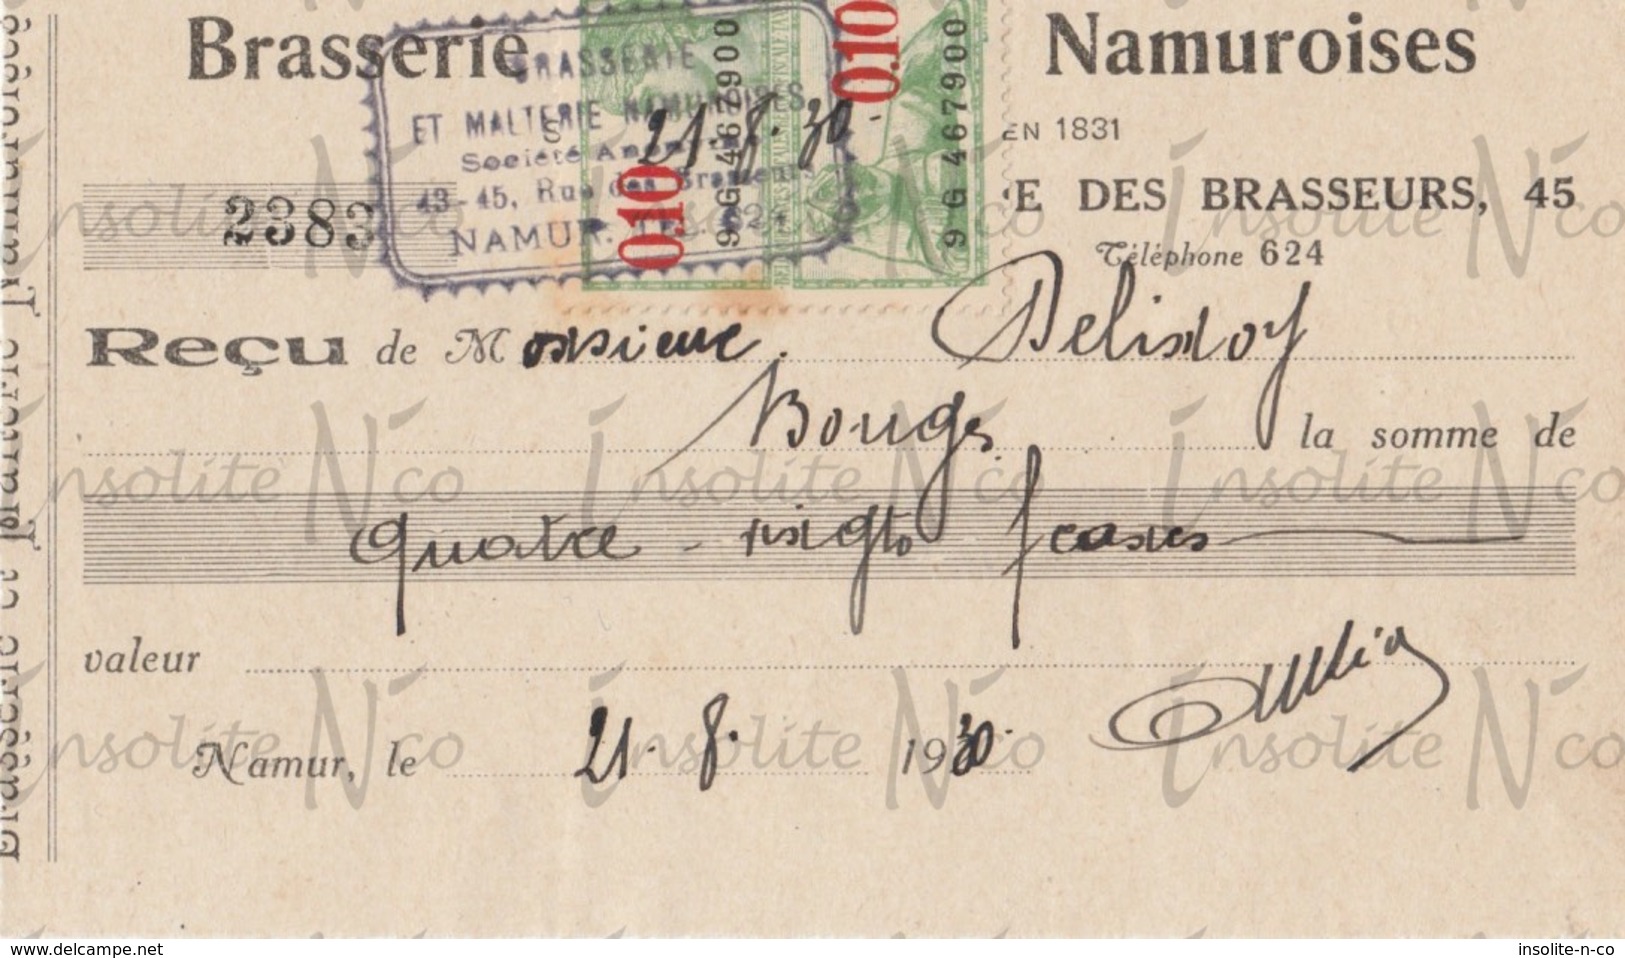 Reçu De La S.A. Brasserie Et Malterie Namuroises Rue Des Brasseurs 43-45 Namur Datée Du 21 Août 1930 - Old Professions